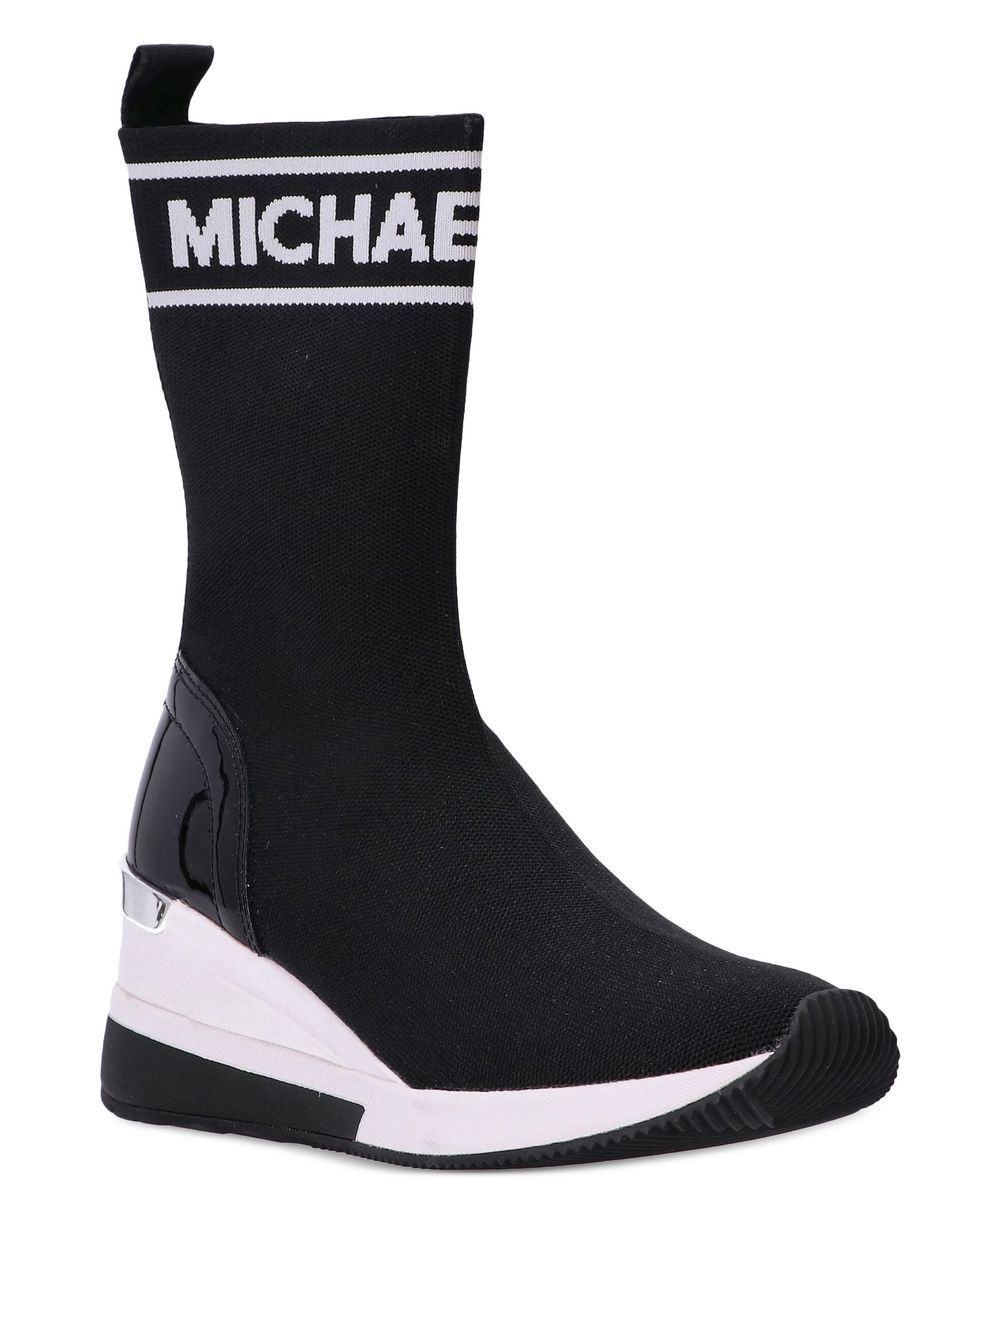 Image 2 of Michael Kors Skyler sock-style wedge sneakers